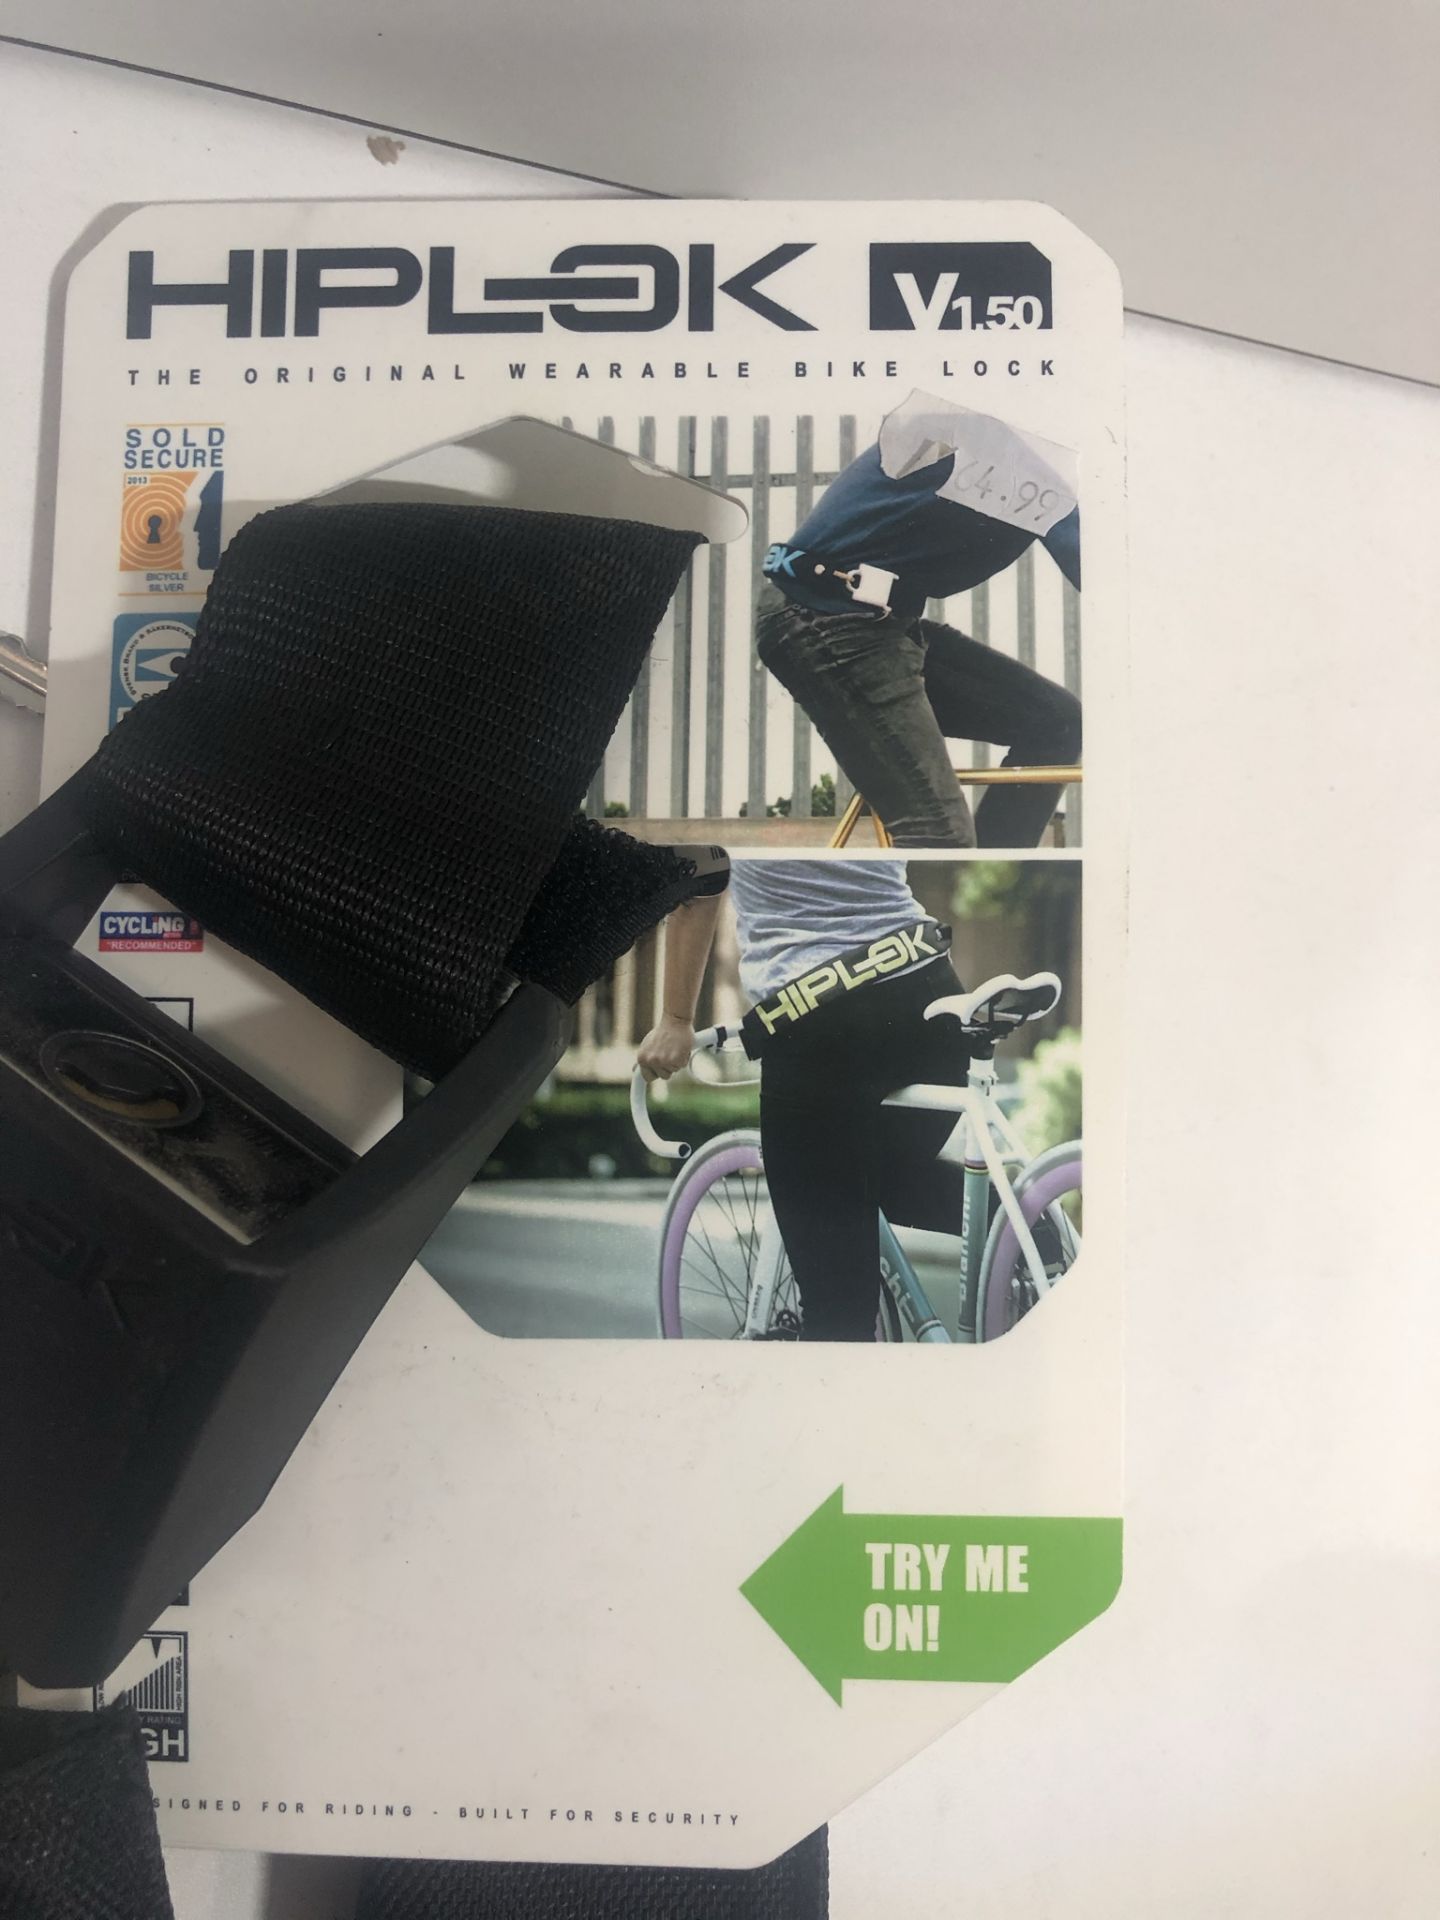 Hiplock VI.50 Wearble Bike Lock - Image 2 of 2